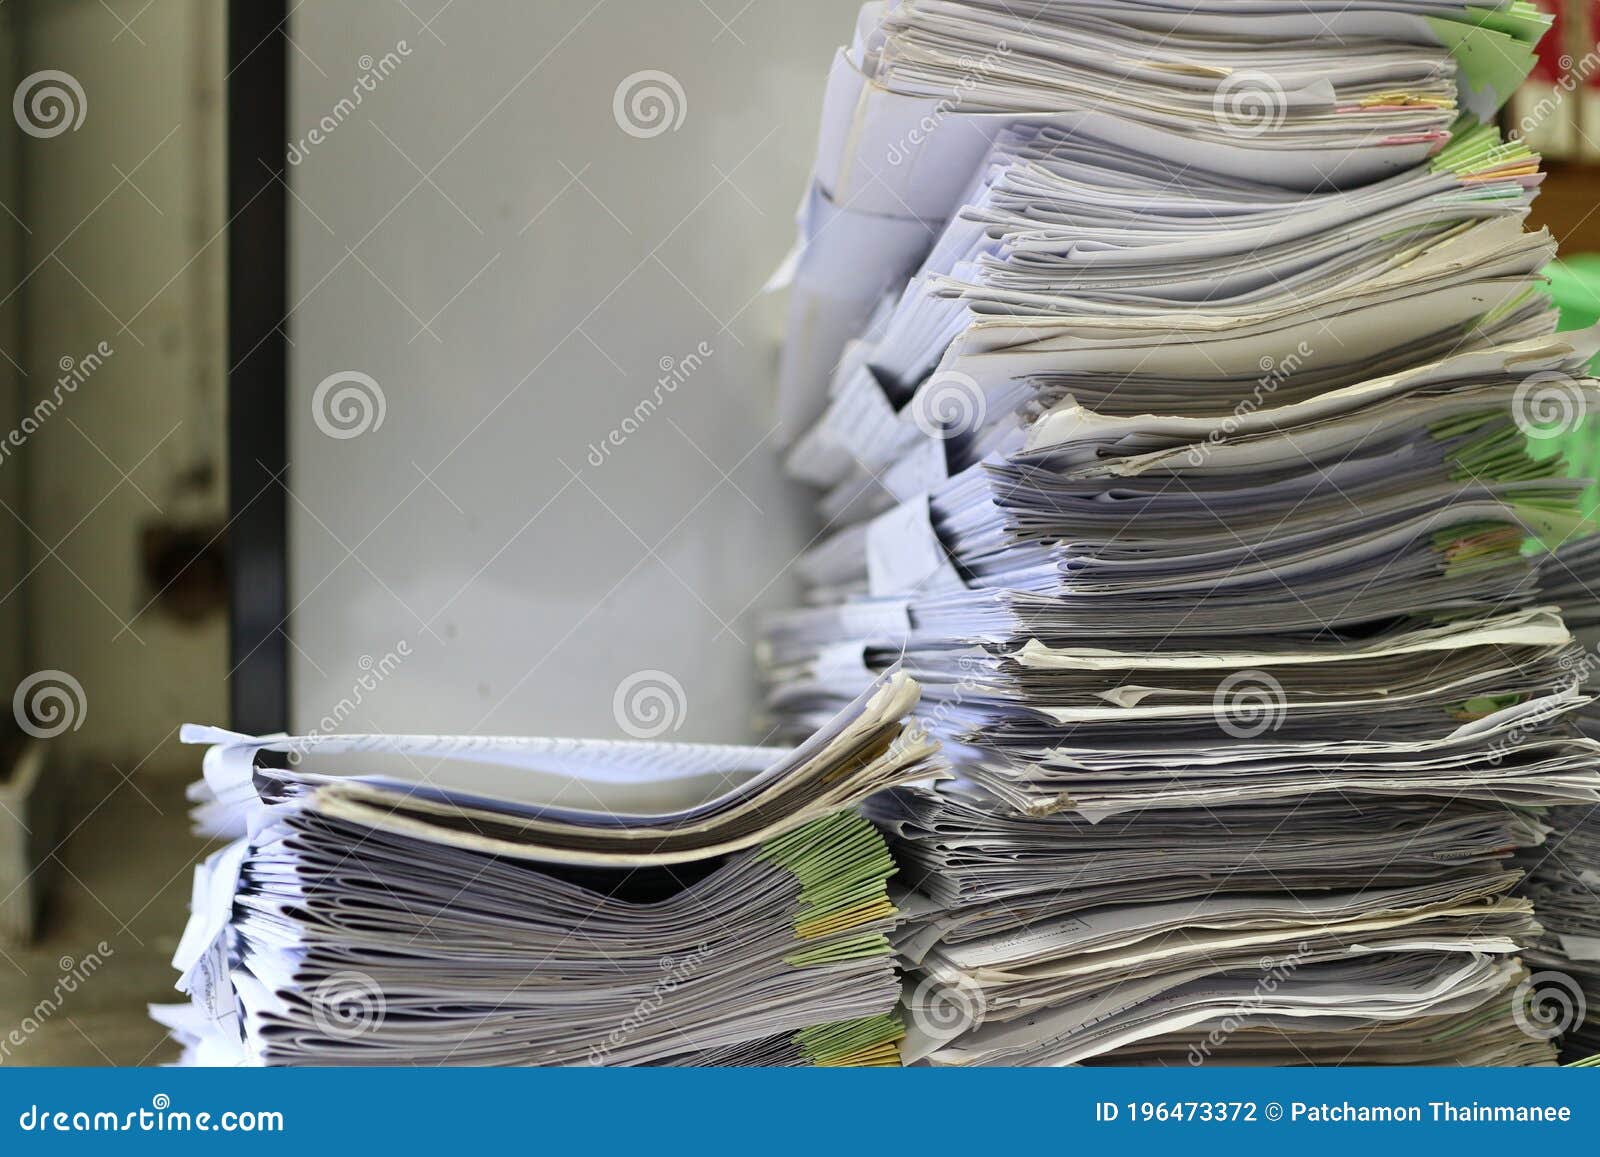 Une Grosse Pile De Piles De Papier De Vieux Papiers Photo stock - Image du  idées, bureau: 196473372